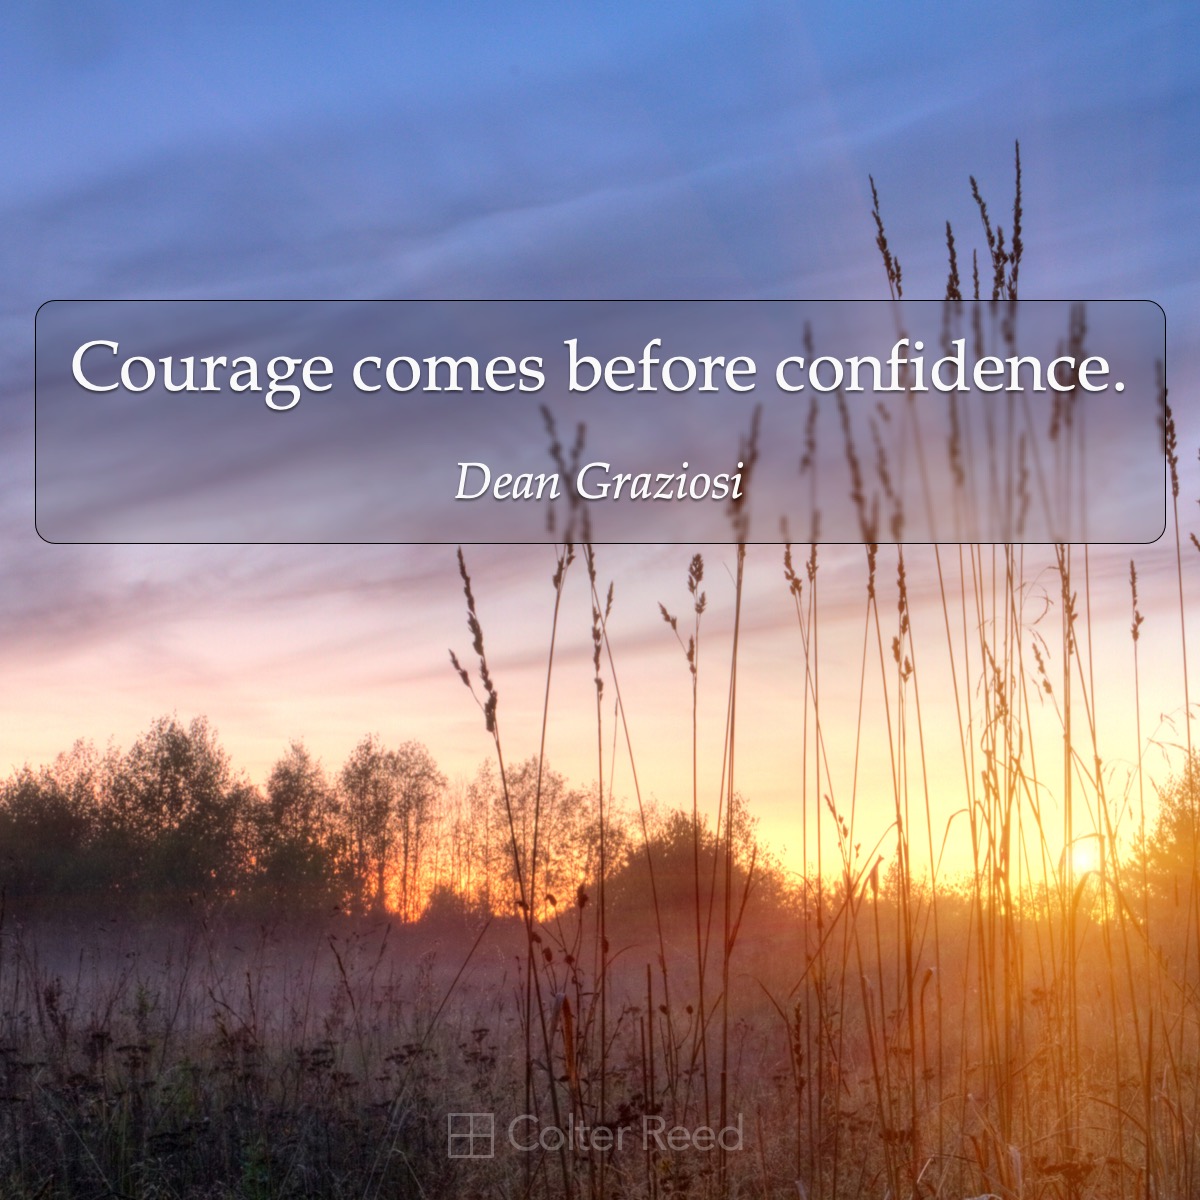 Courage comes before confidence. —Dean Graziosi